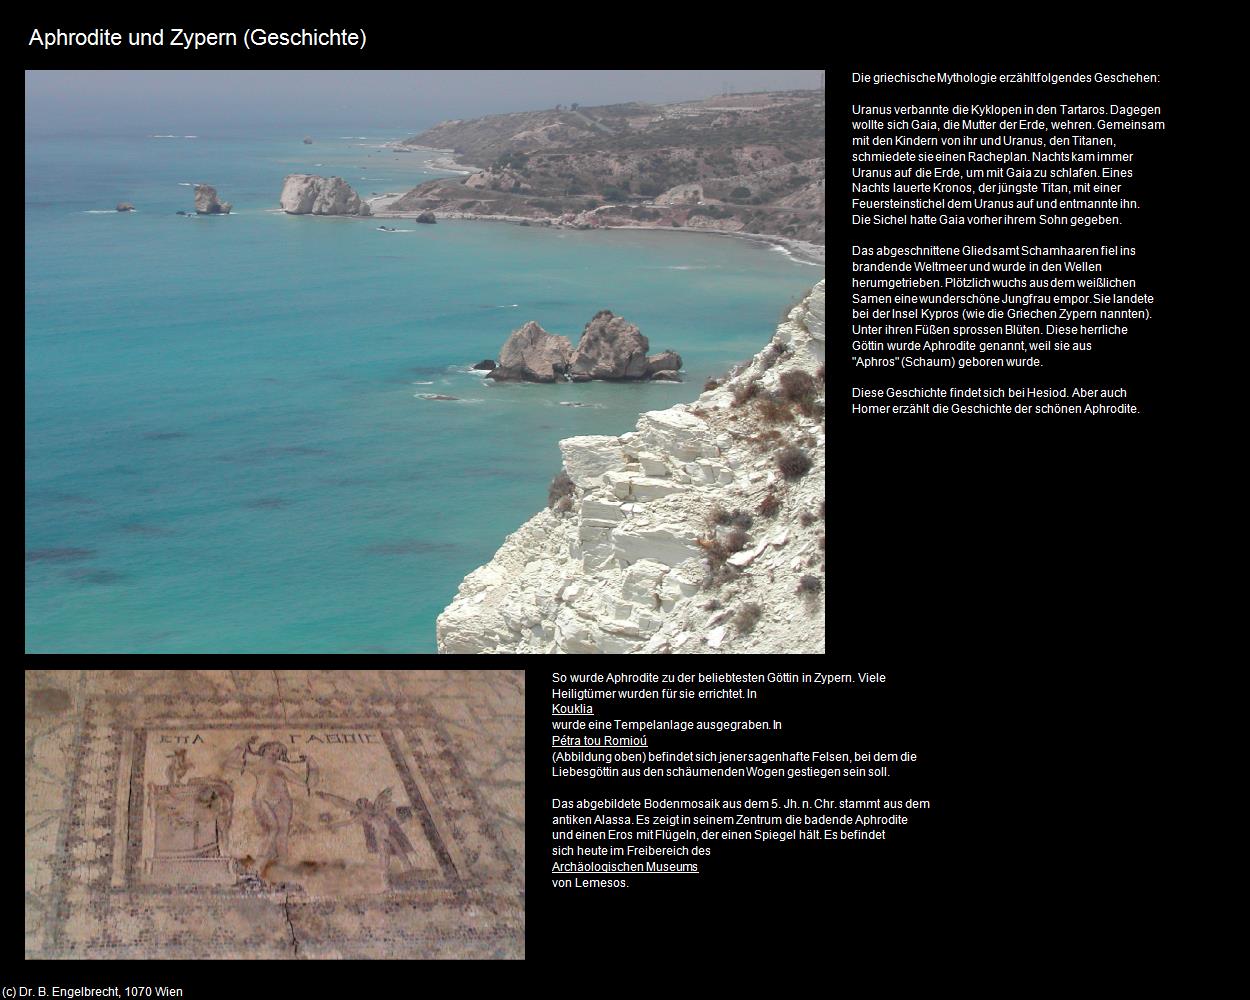 Aphrodite und Zypern (Pissouri) in ZYPERN-Insel der Aphrodite(c)B.Engelbrecht